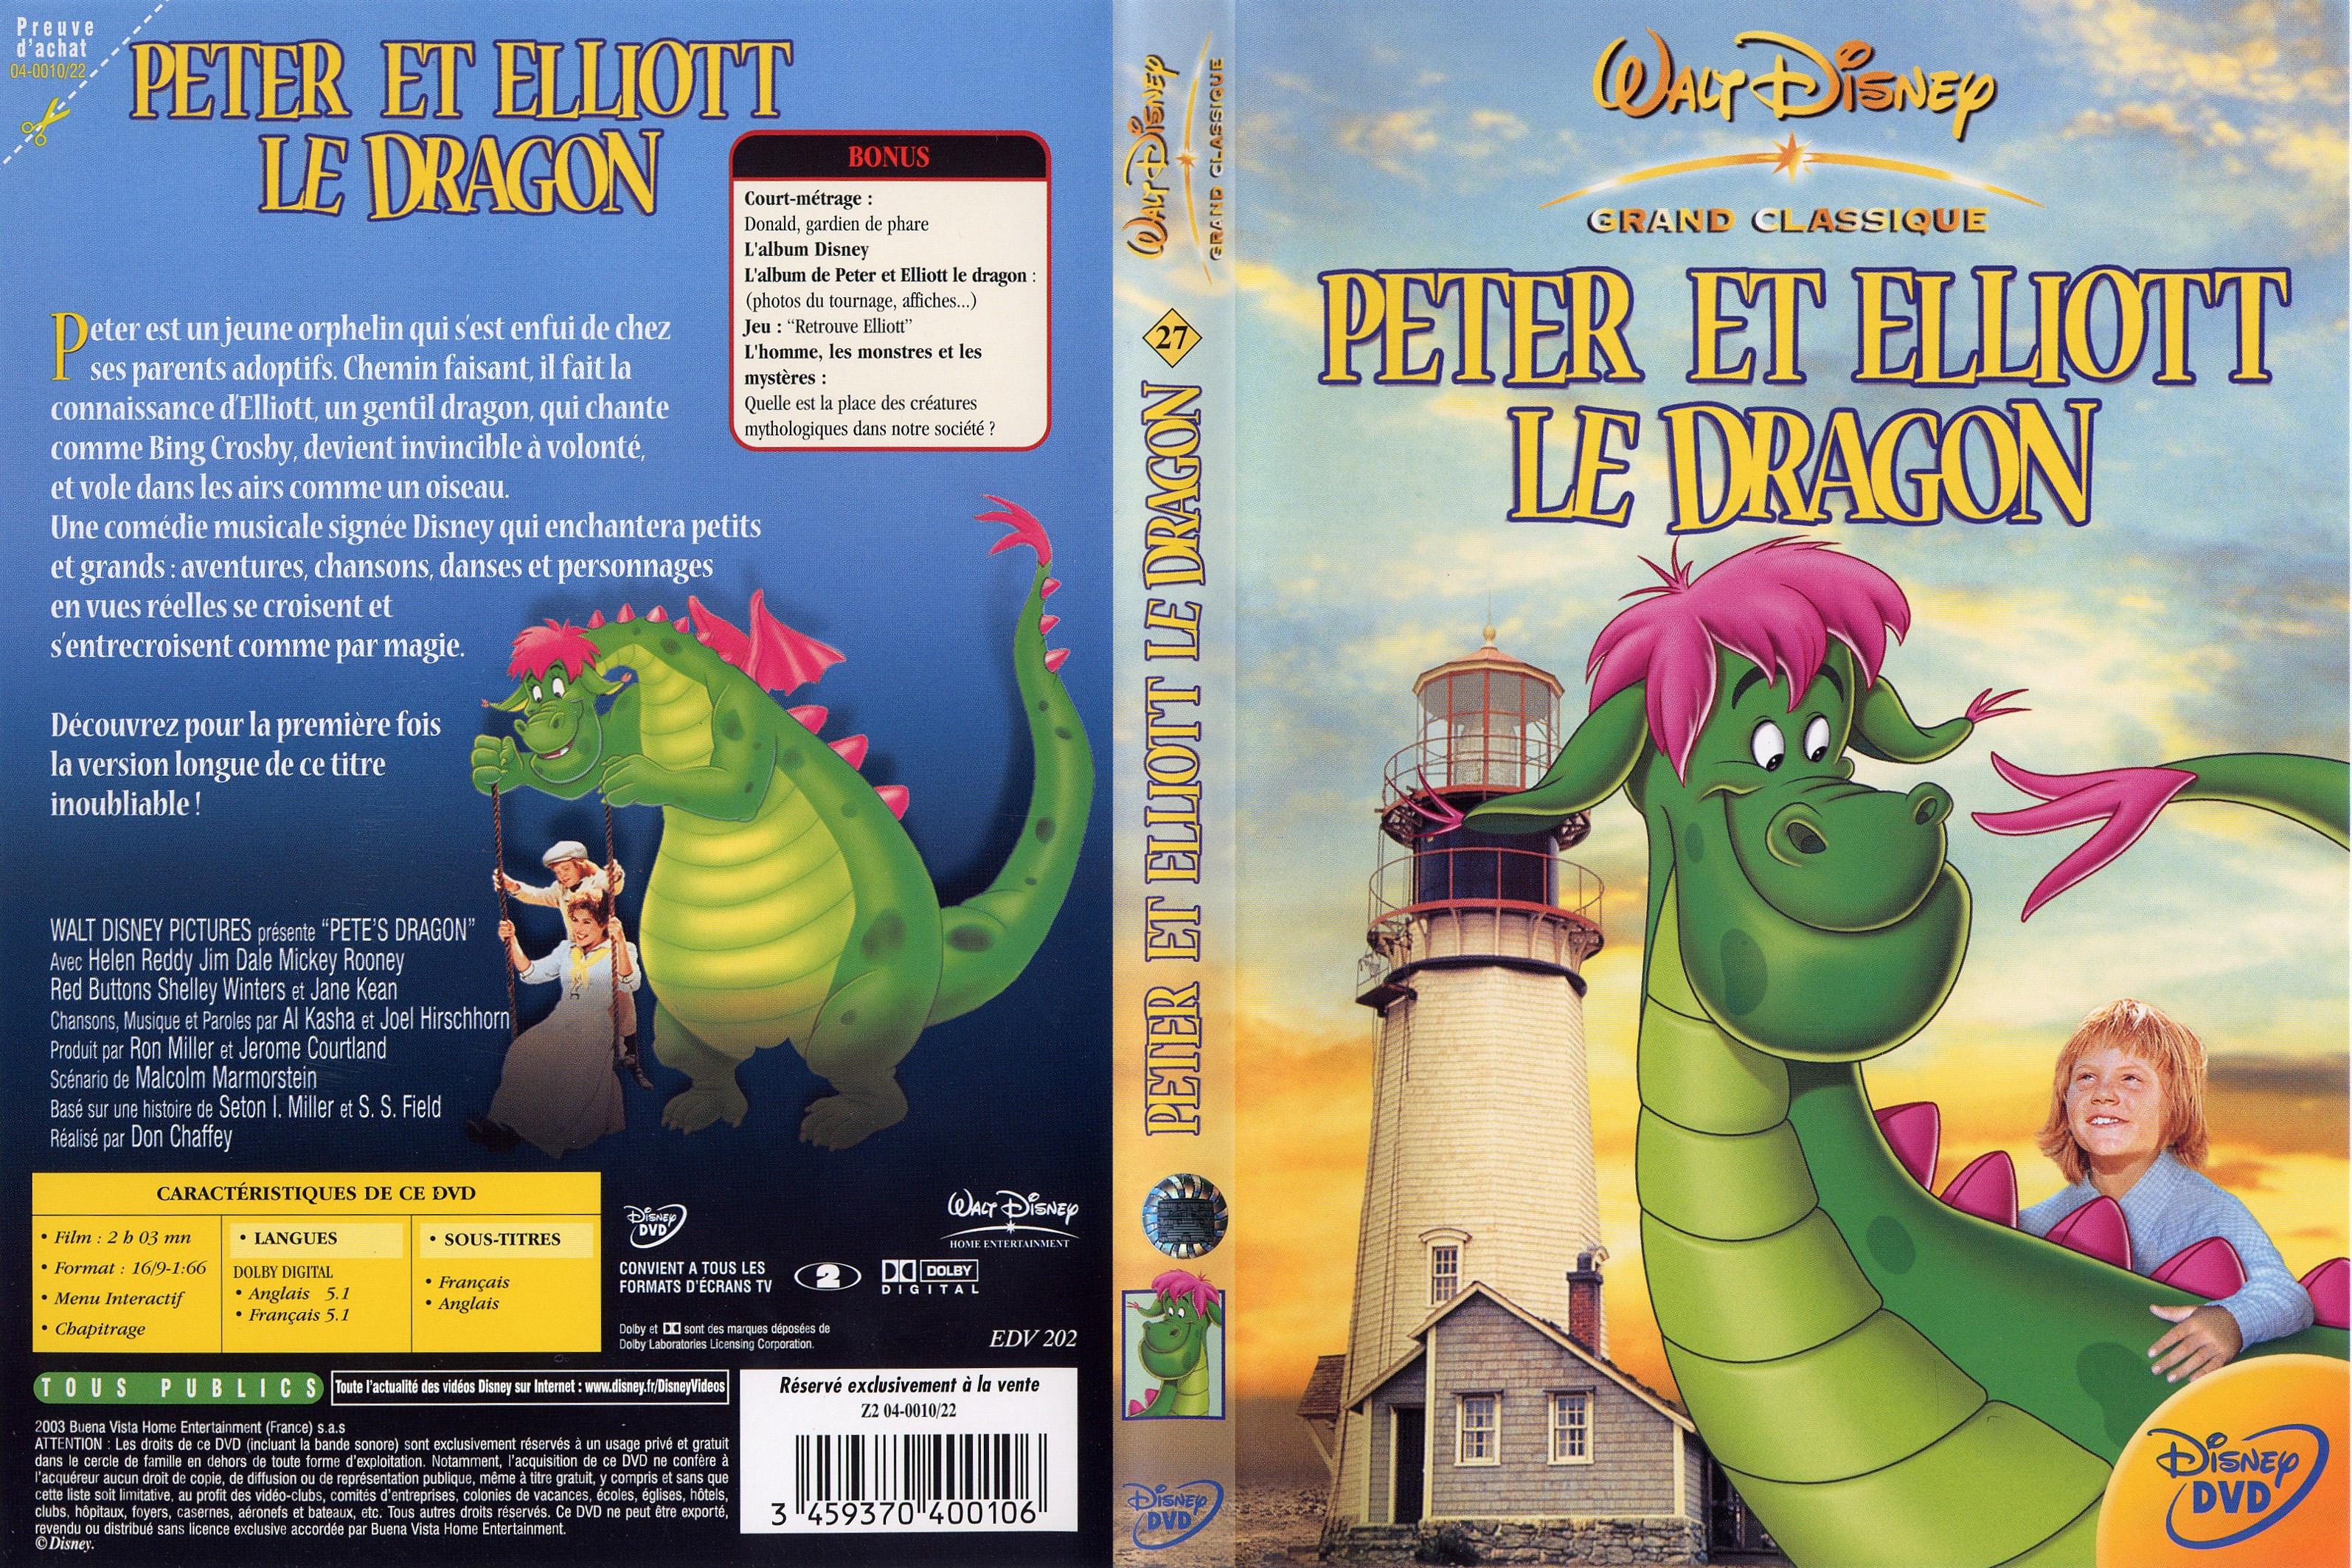 Jaquette DVD Peter et Elliott le dragon